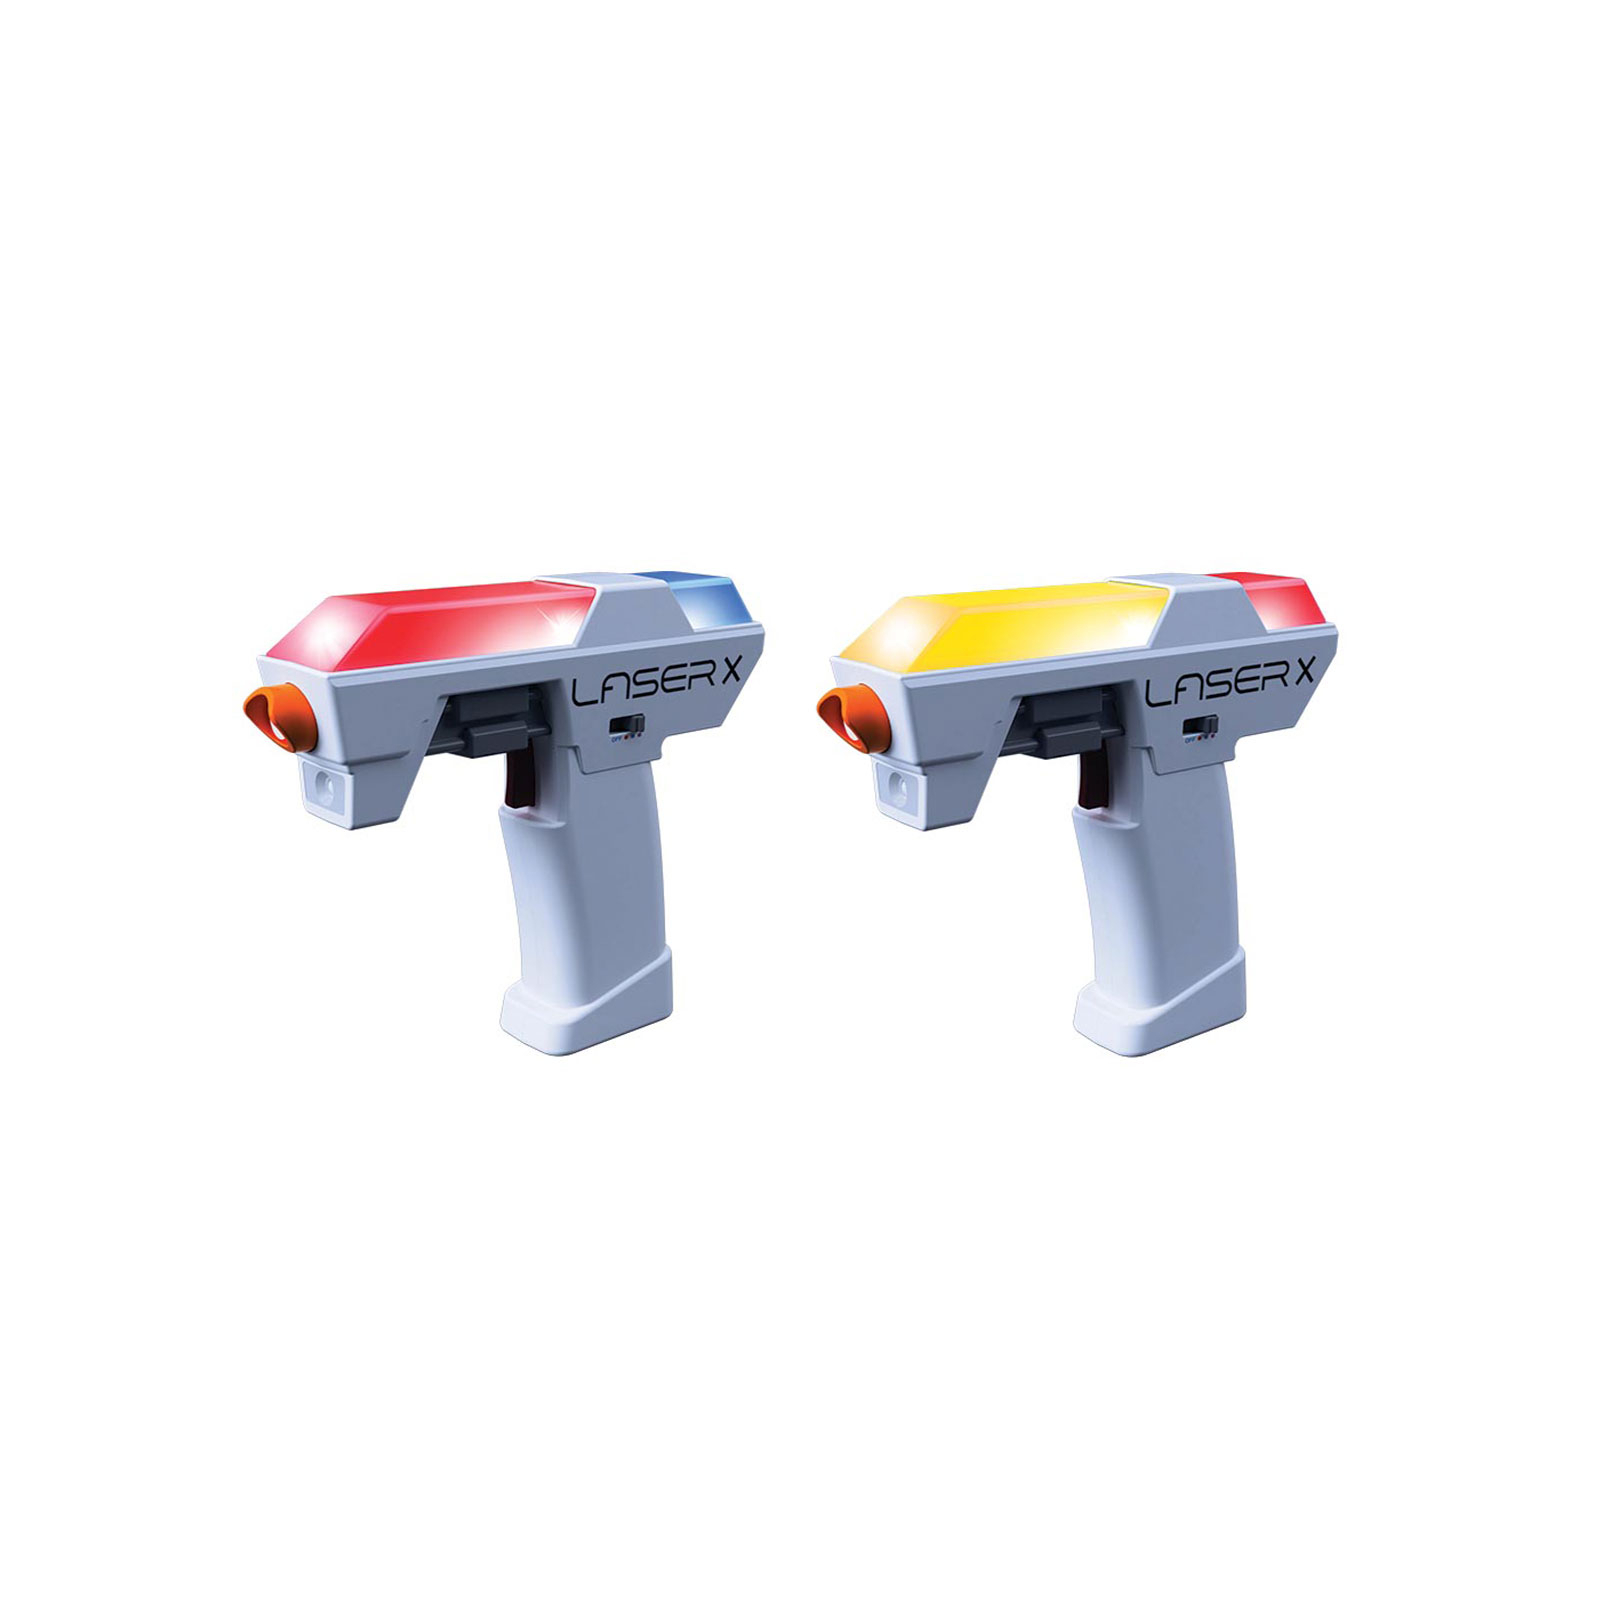 Іграшкова зброя Laser X для лазерних боїв Micro для двох гравців (87906)